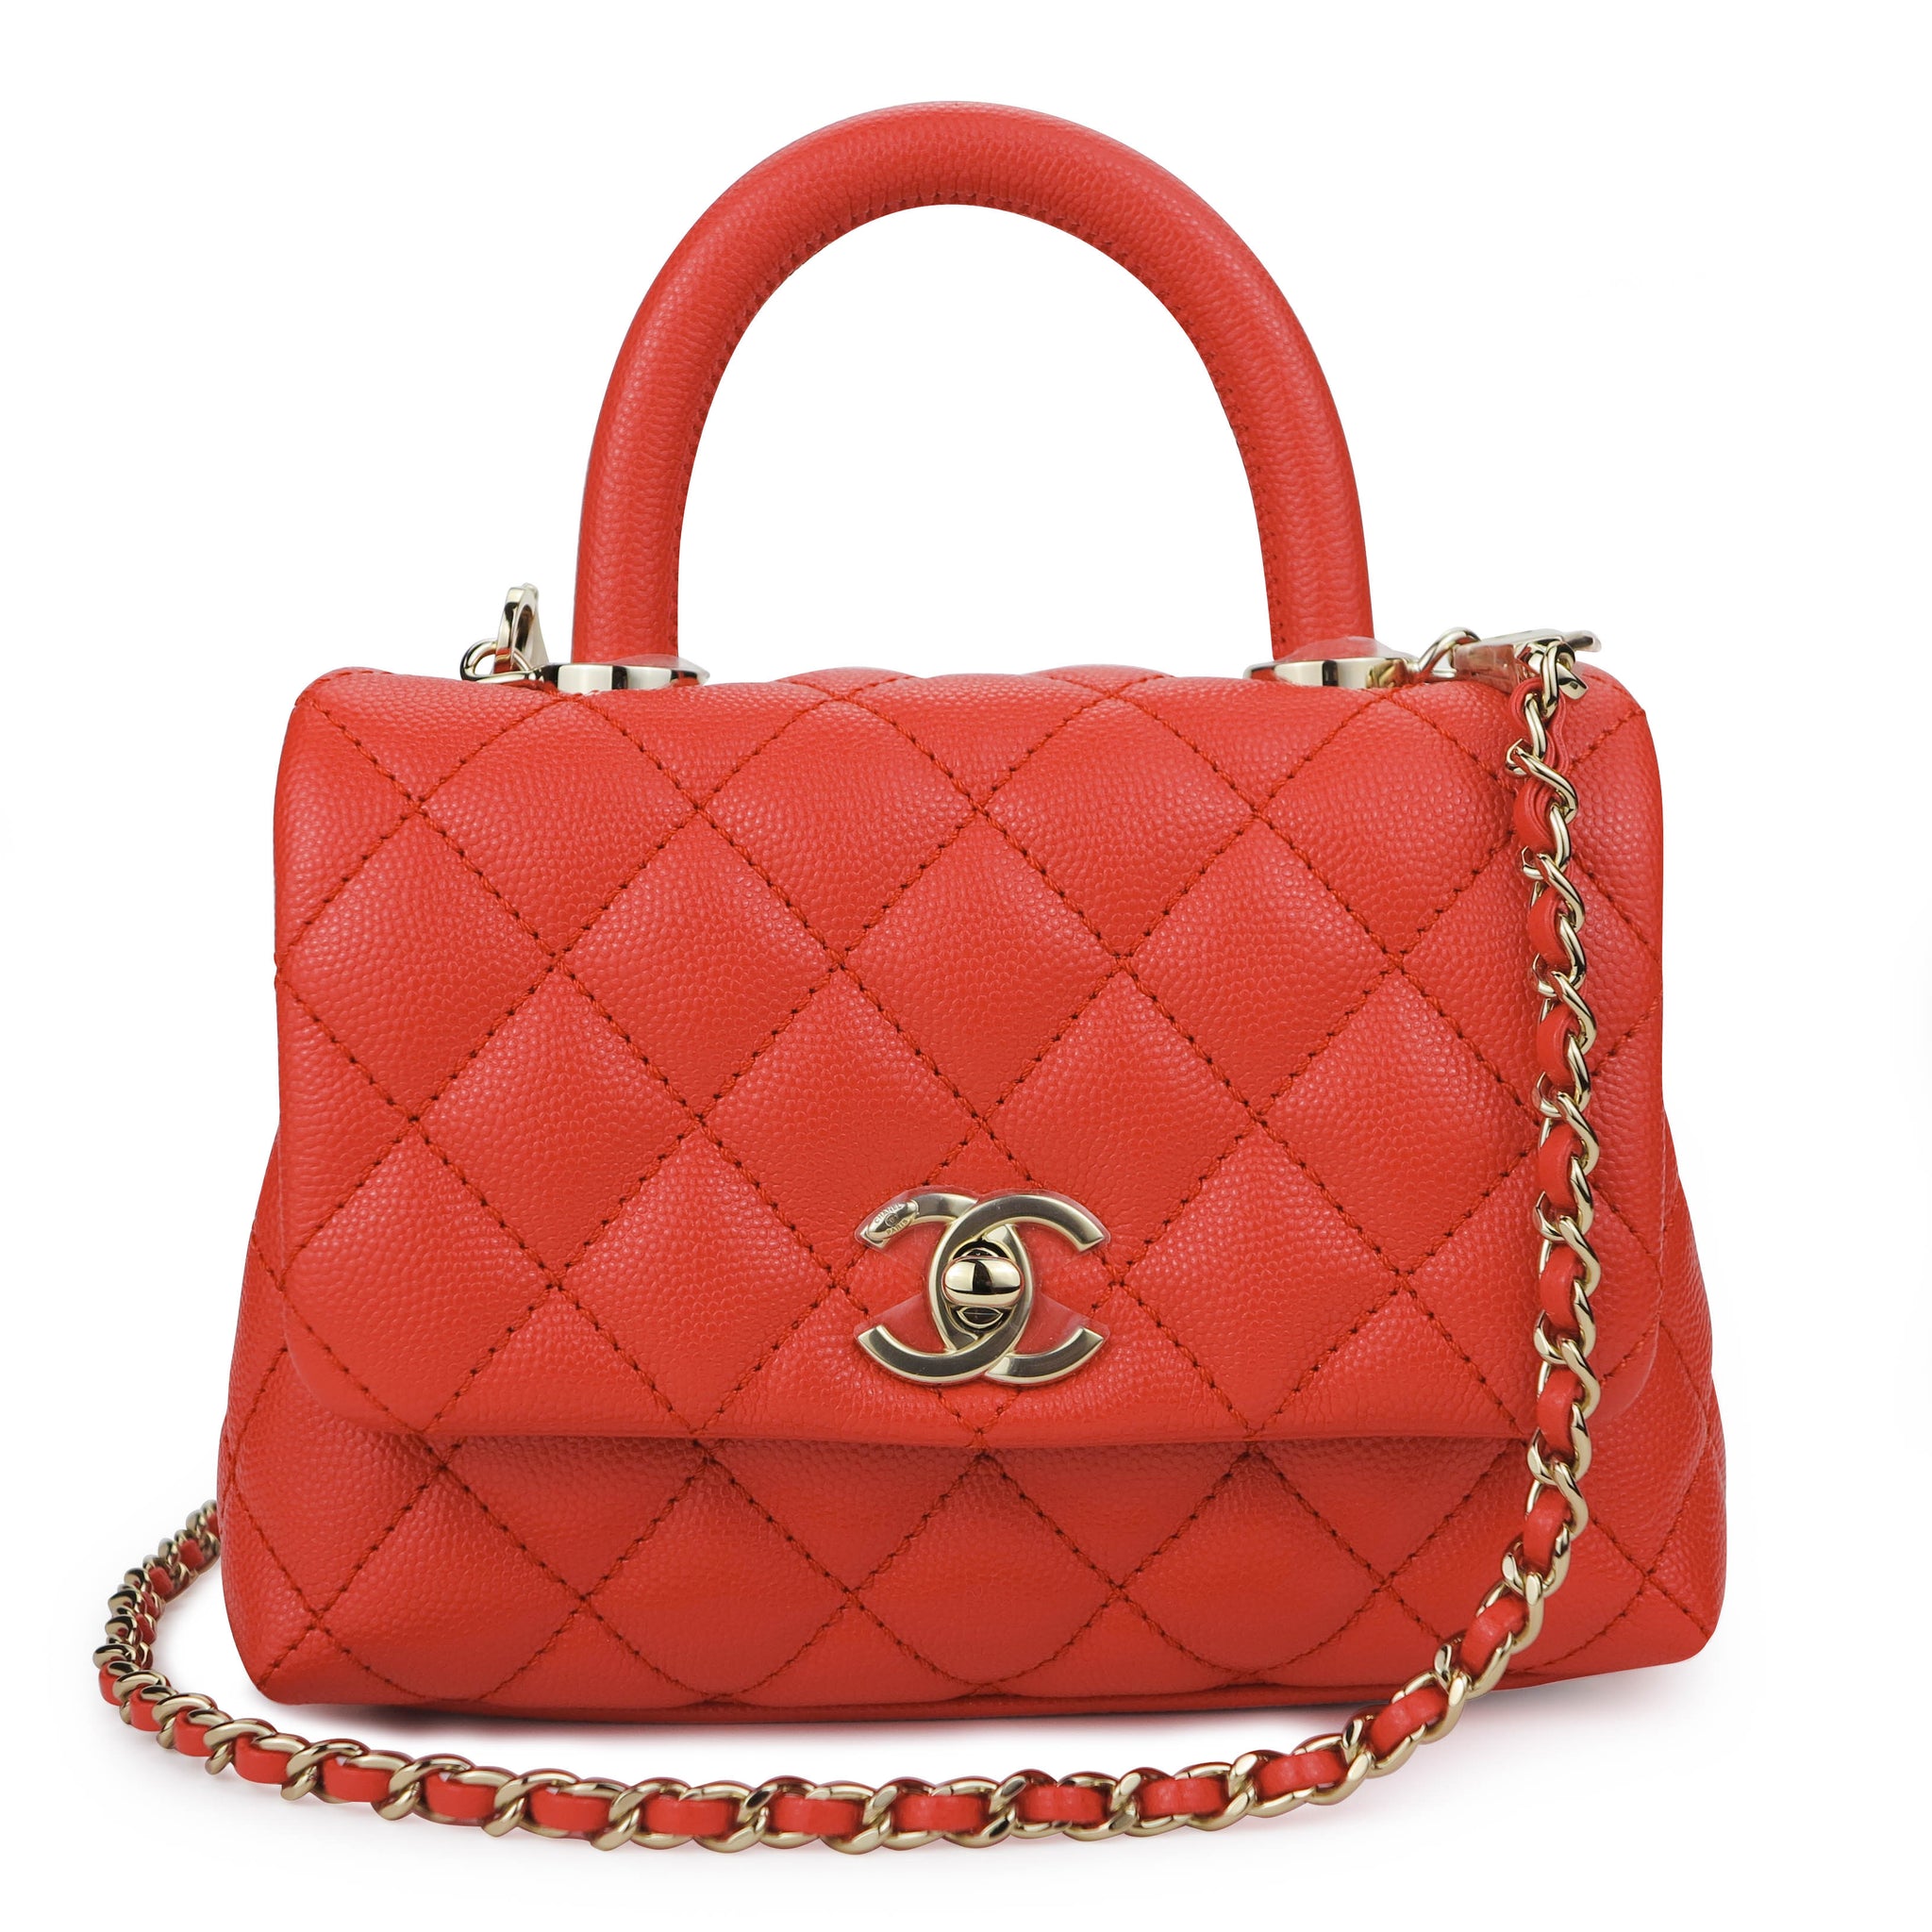 Túi xách Chanel Mini Flap Bag with Top Handle siêu cấp màu đỏ